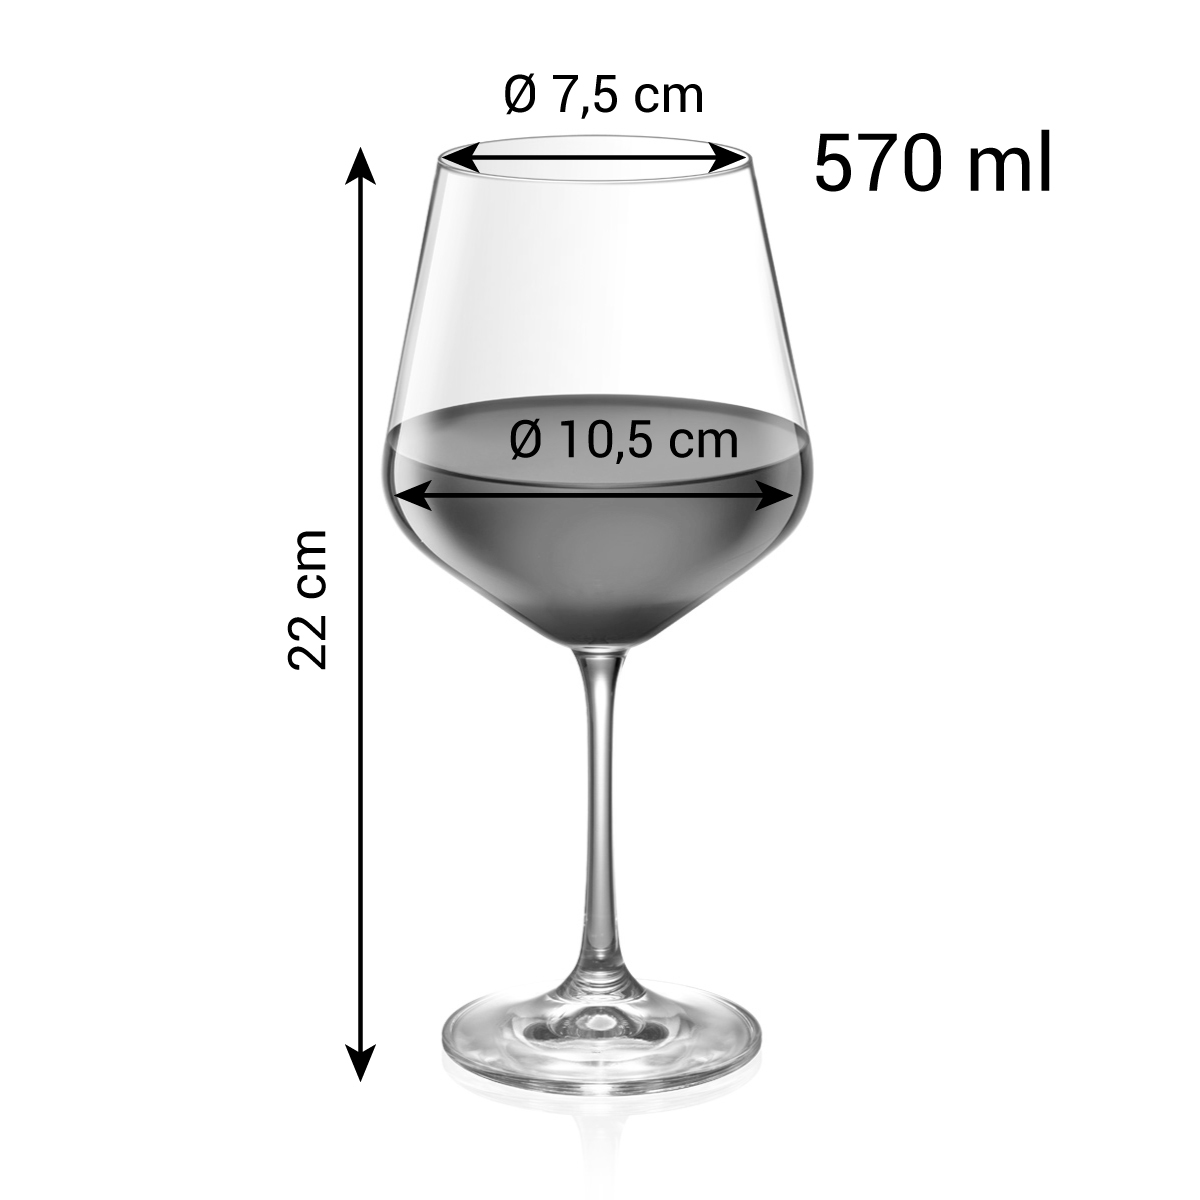 Copo vinho tinto GIORGIO 570 ml, 6 pcs